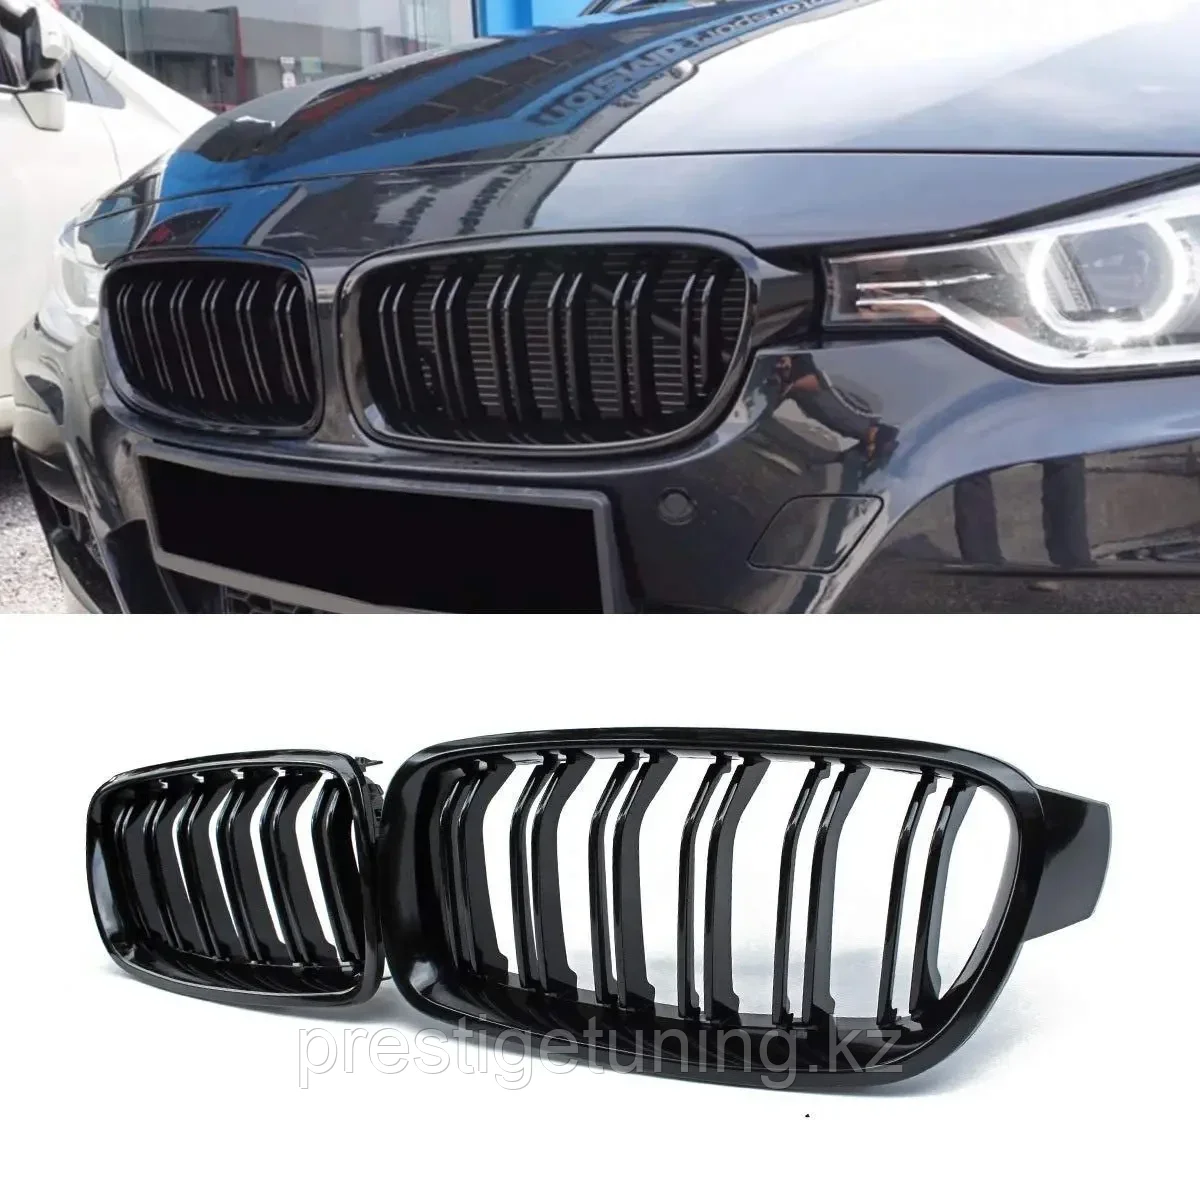 Решетка радиатора на BMW 3-серия (F30) 2011-18 стиль M3 (Черный цвет)